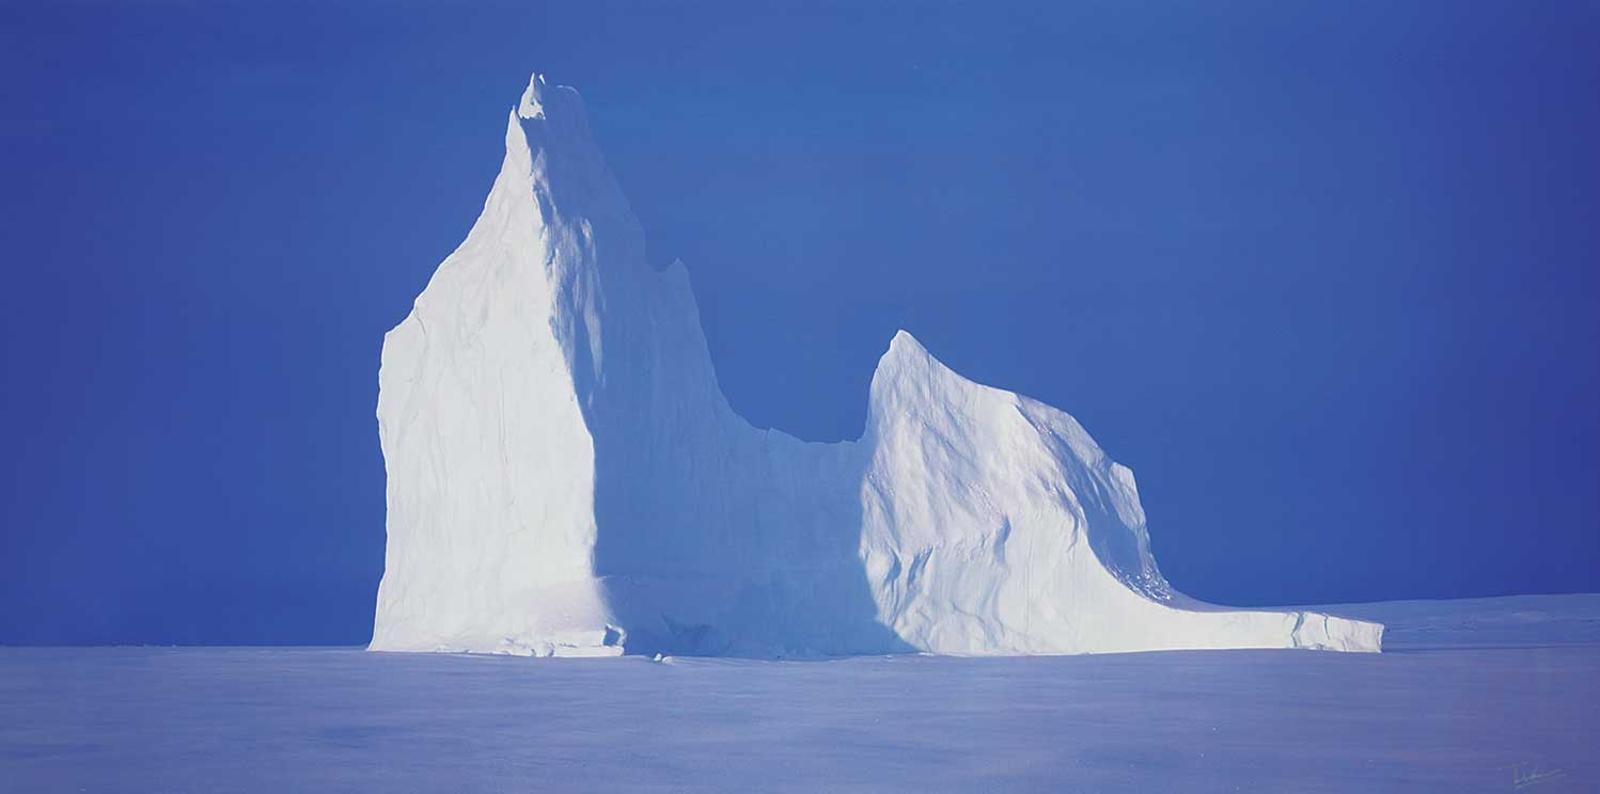 John Dunn - Untitled - Iceberg